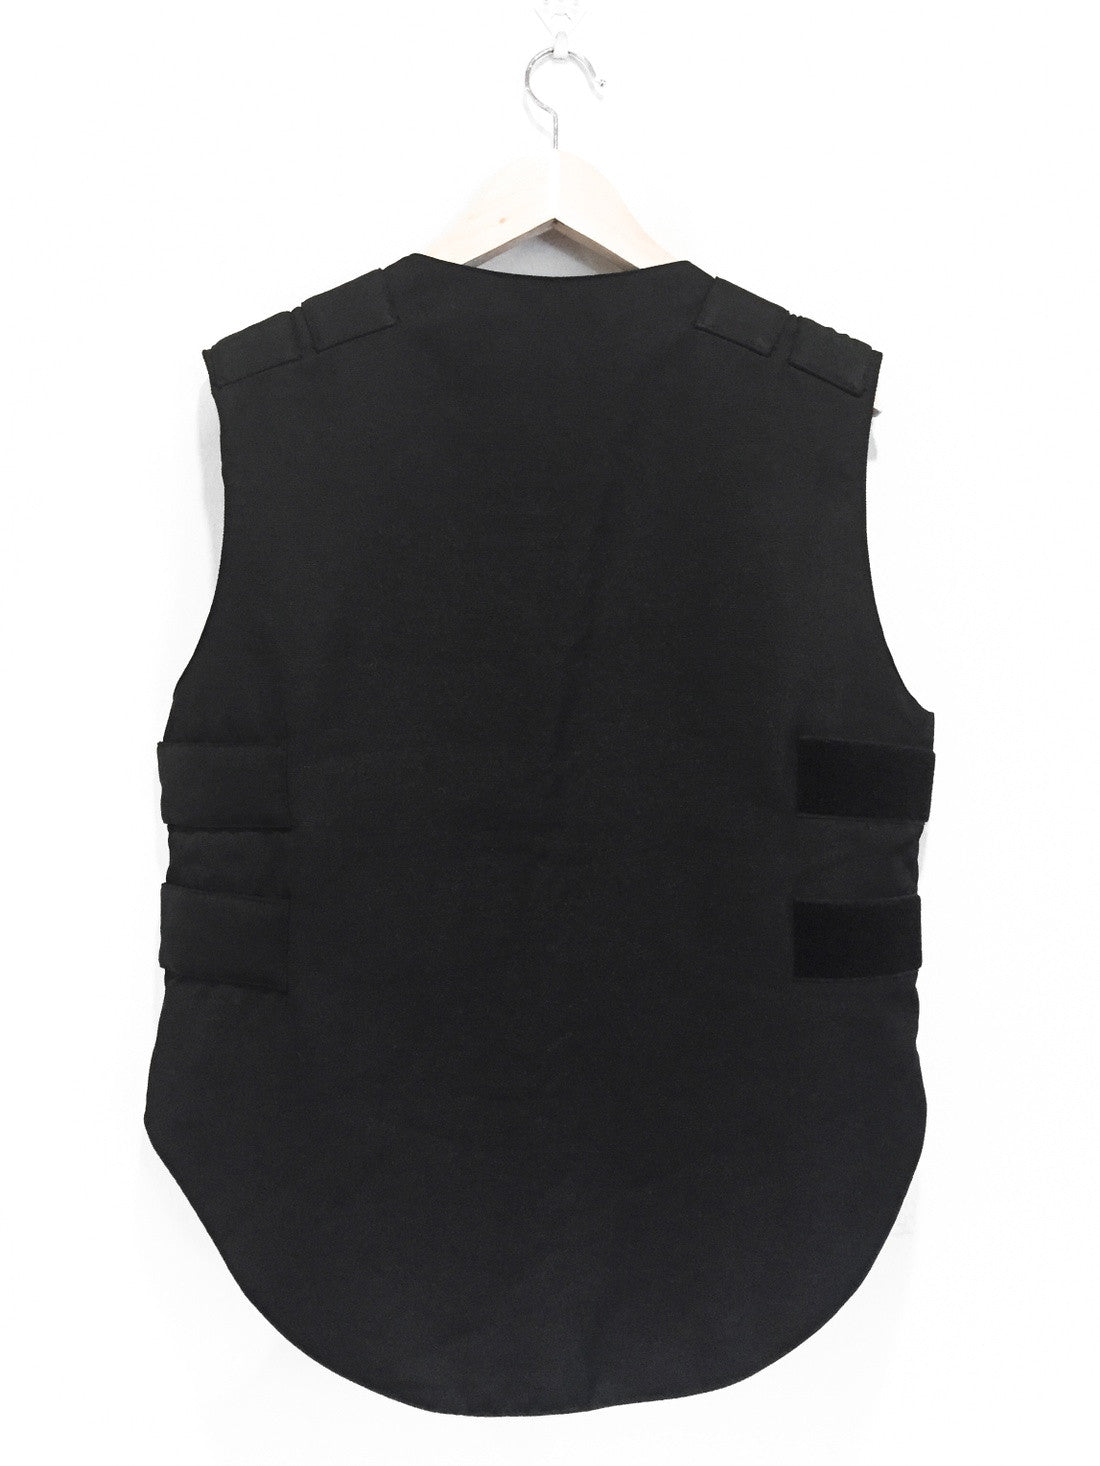 W2C LV bulletproof vest : r/FashionReps